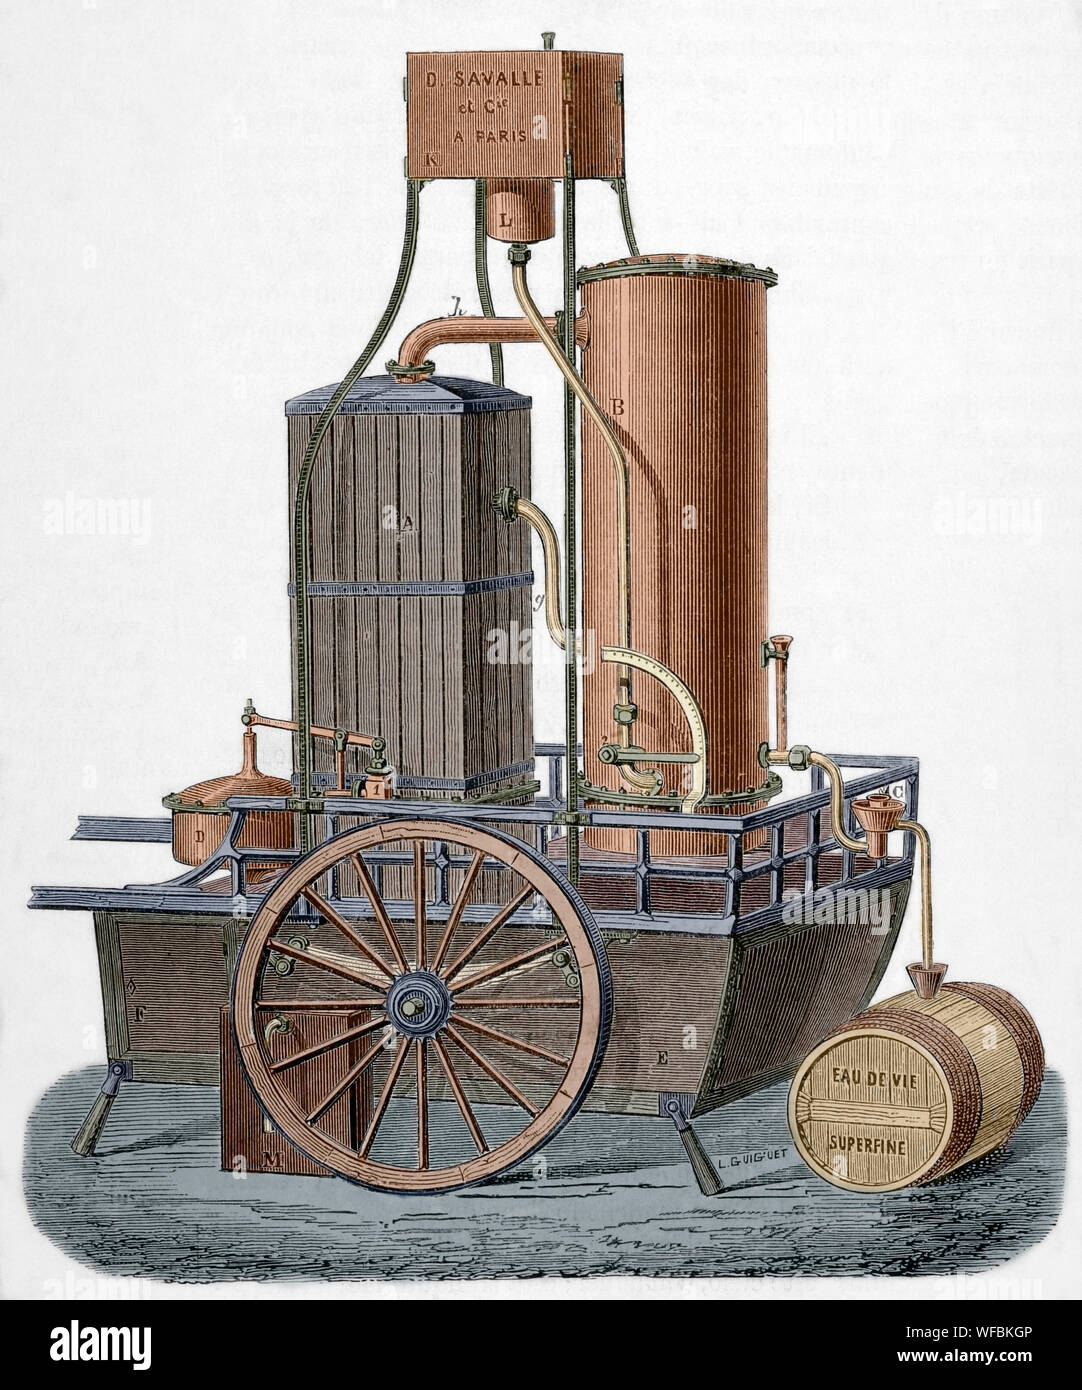 Lokomobile. Traction Engine für die Destillation von Weinen, gebaut von M. Savalle. Es funktionierte durch Dampf. Dieses Modell könnte produzieren 160 Hektoliter Wein. Es bestand aus einem rechteckigen Spalte für ein neues System, eine Wein - Heizung Kondensator und einen Regler. Es hatte auch einen Wein Tank mit einem anderen Power Regulator ausgestattet. Zeichnung von L. Guiguet. Gravur. La Ilustracion Española y Americana, 15. Oktober 1876. Später Färbung. Stockfoto